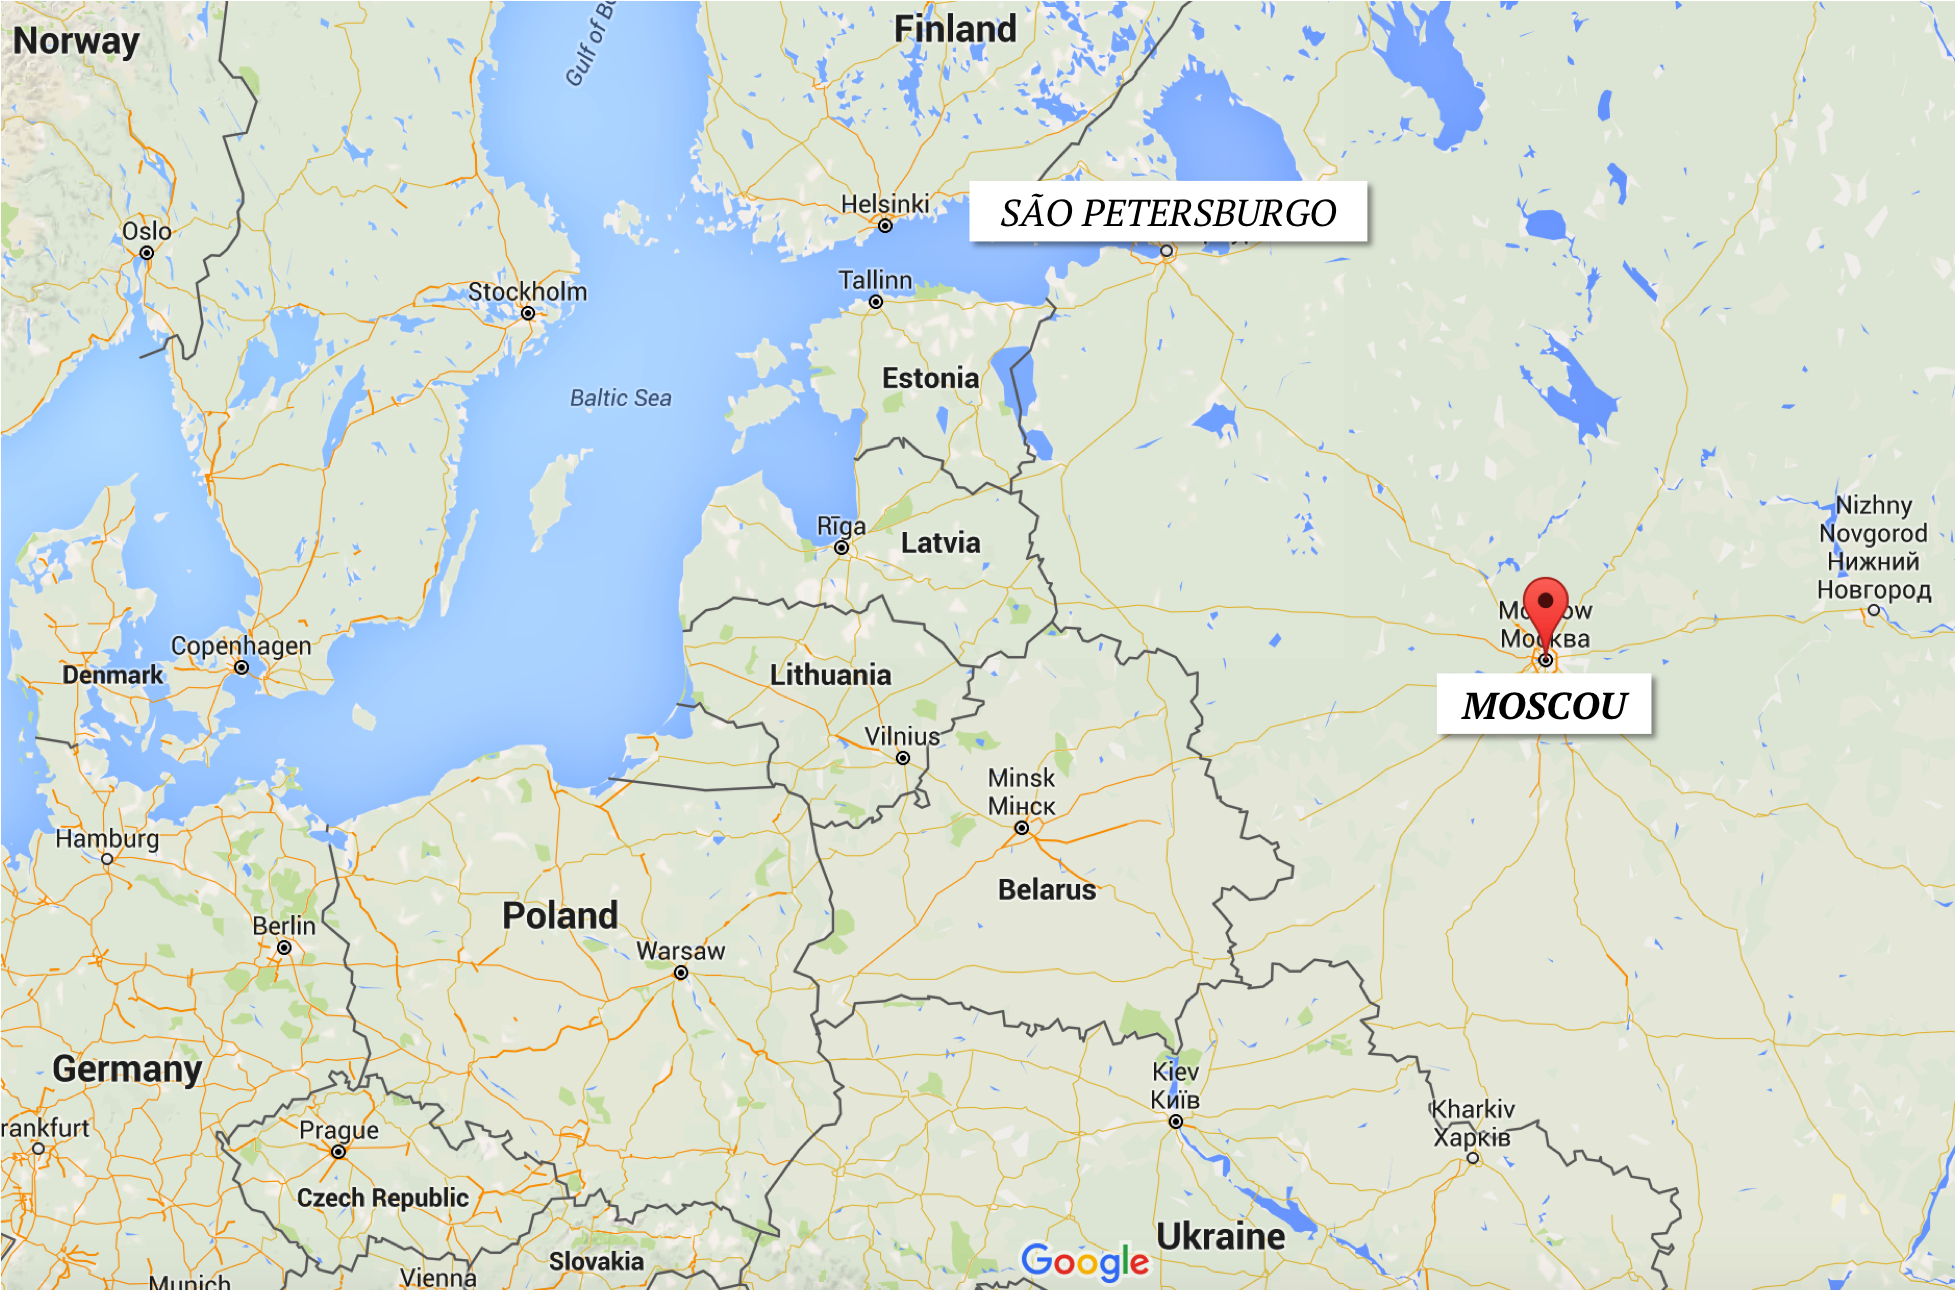 Localização de Moscou no mapa